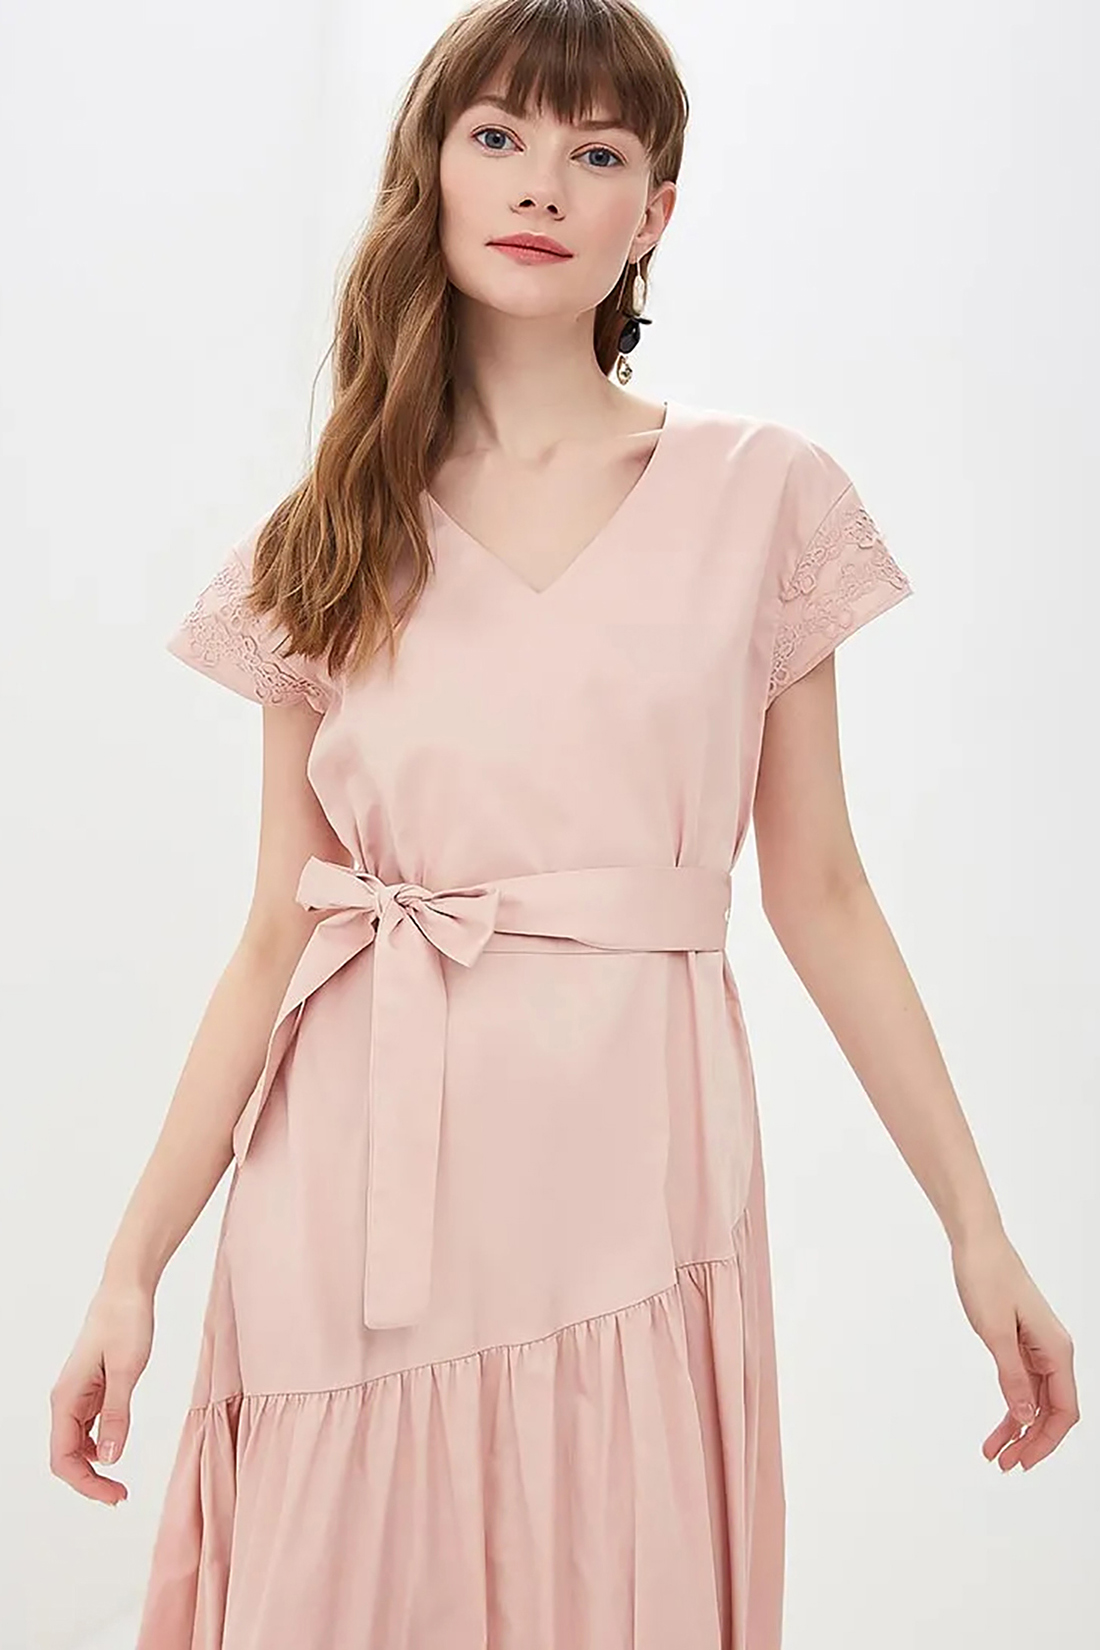 Платье с асимметричной оборкой (арт. baon B459050), размер M, цвет розовый Платье с асимметричной оборкой (арт. baon B459050) - фото 3